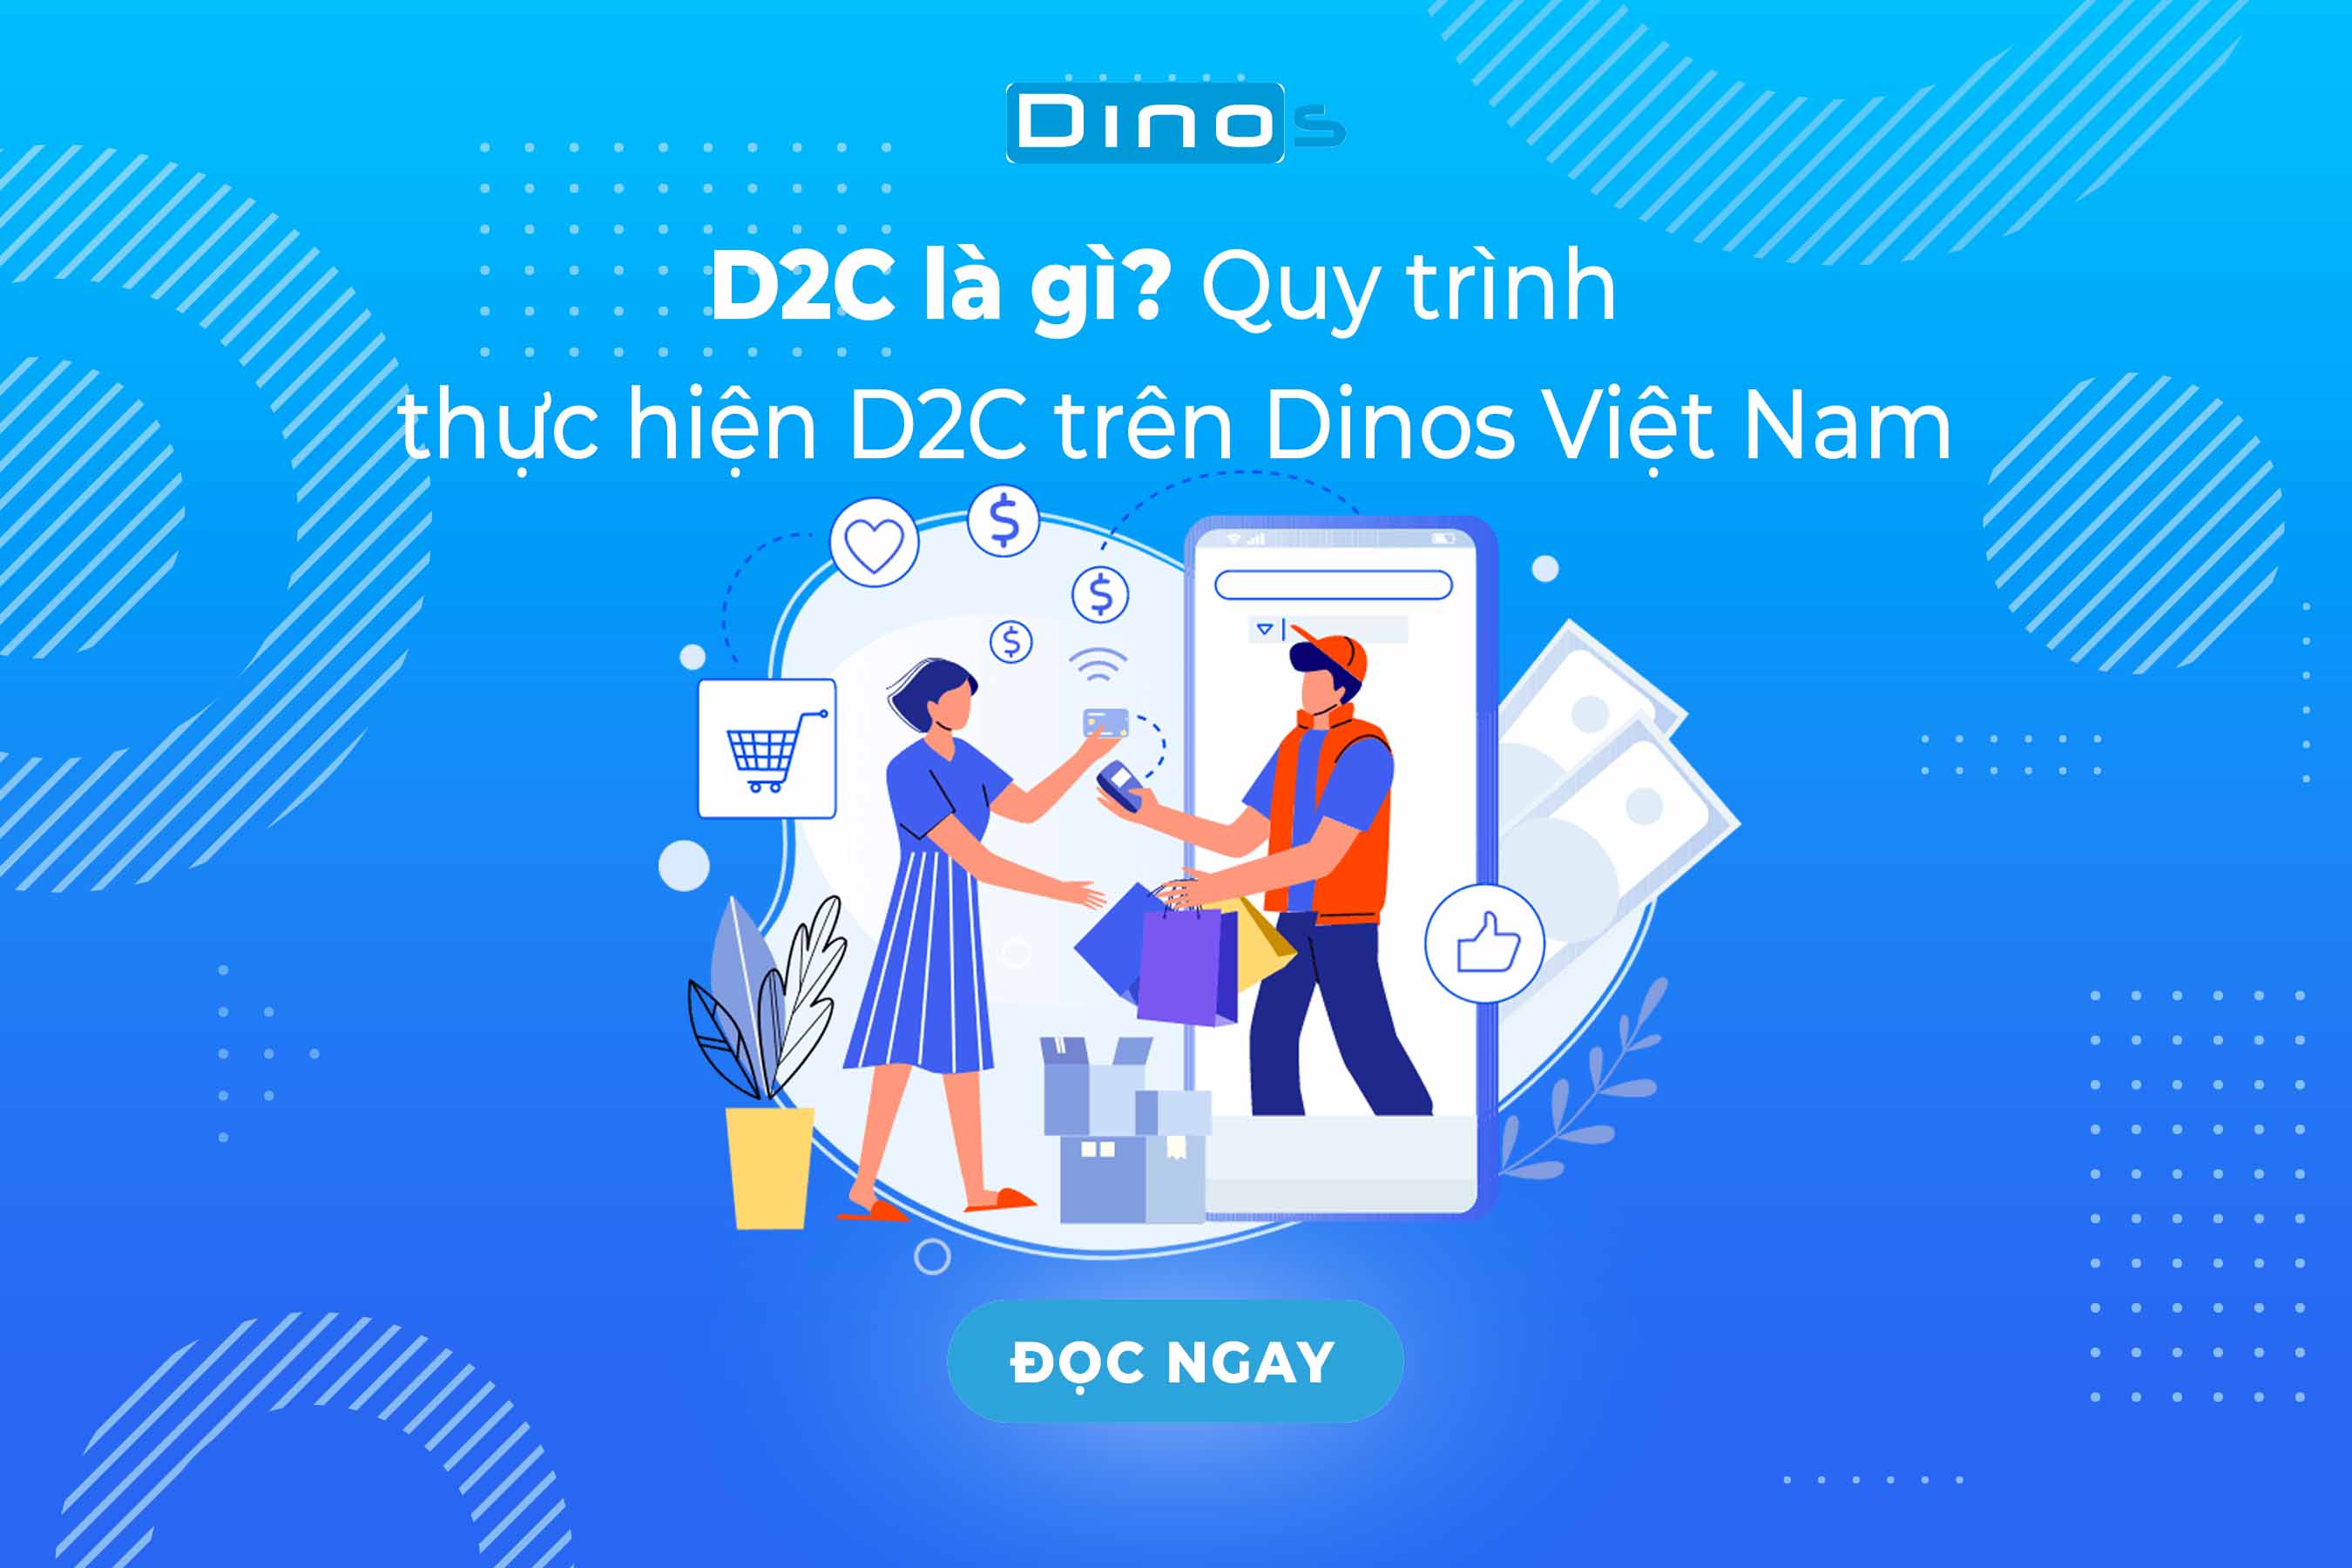 D2C là gì? Quy trình thực hiện D2C trên Dinos Việt Nam